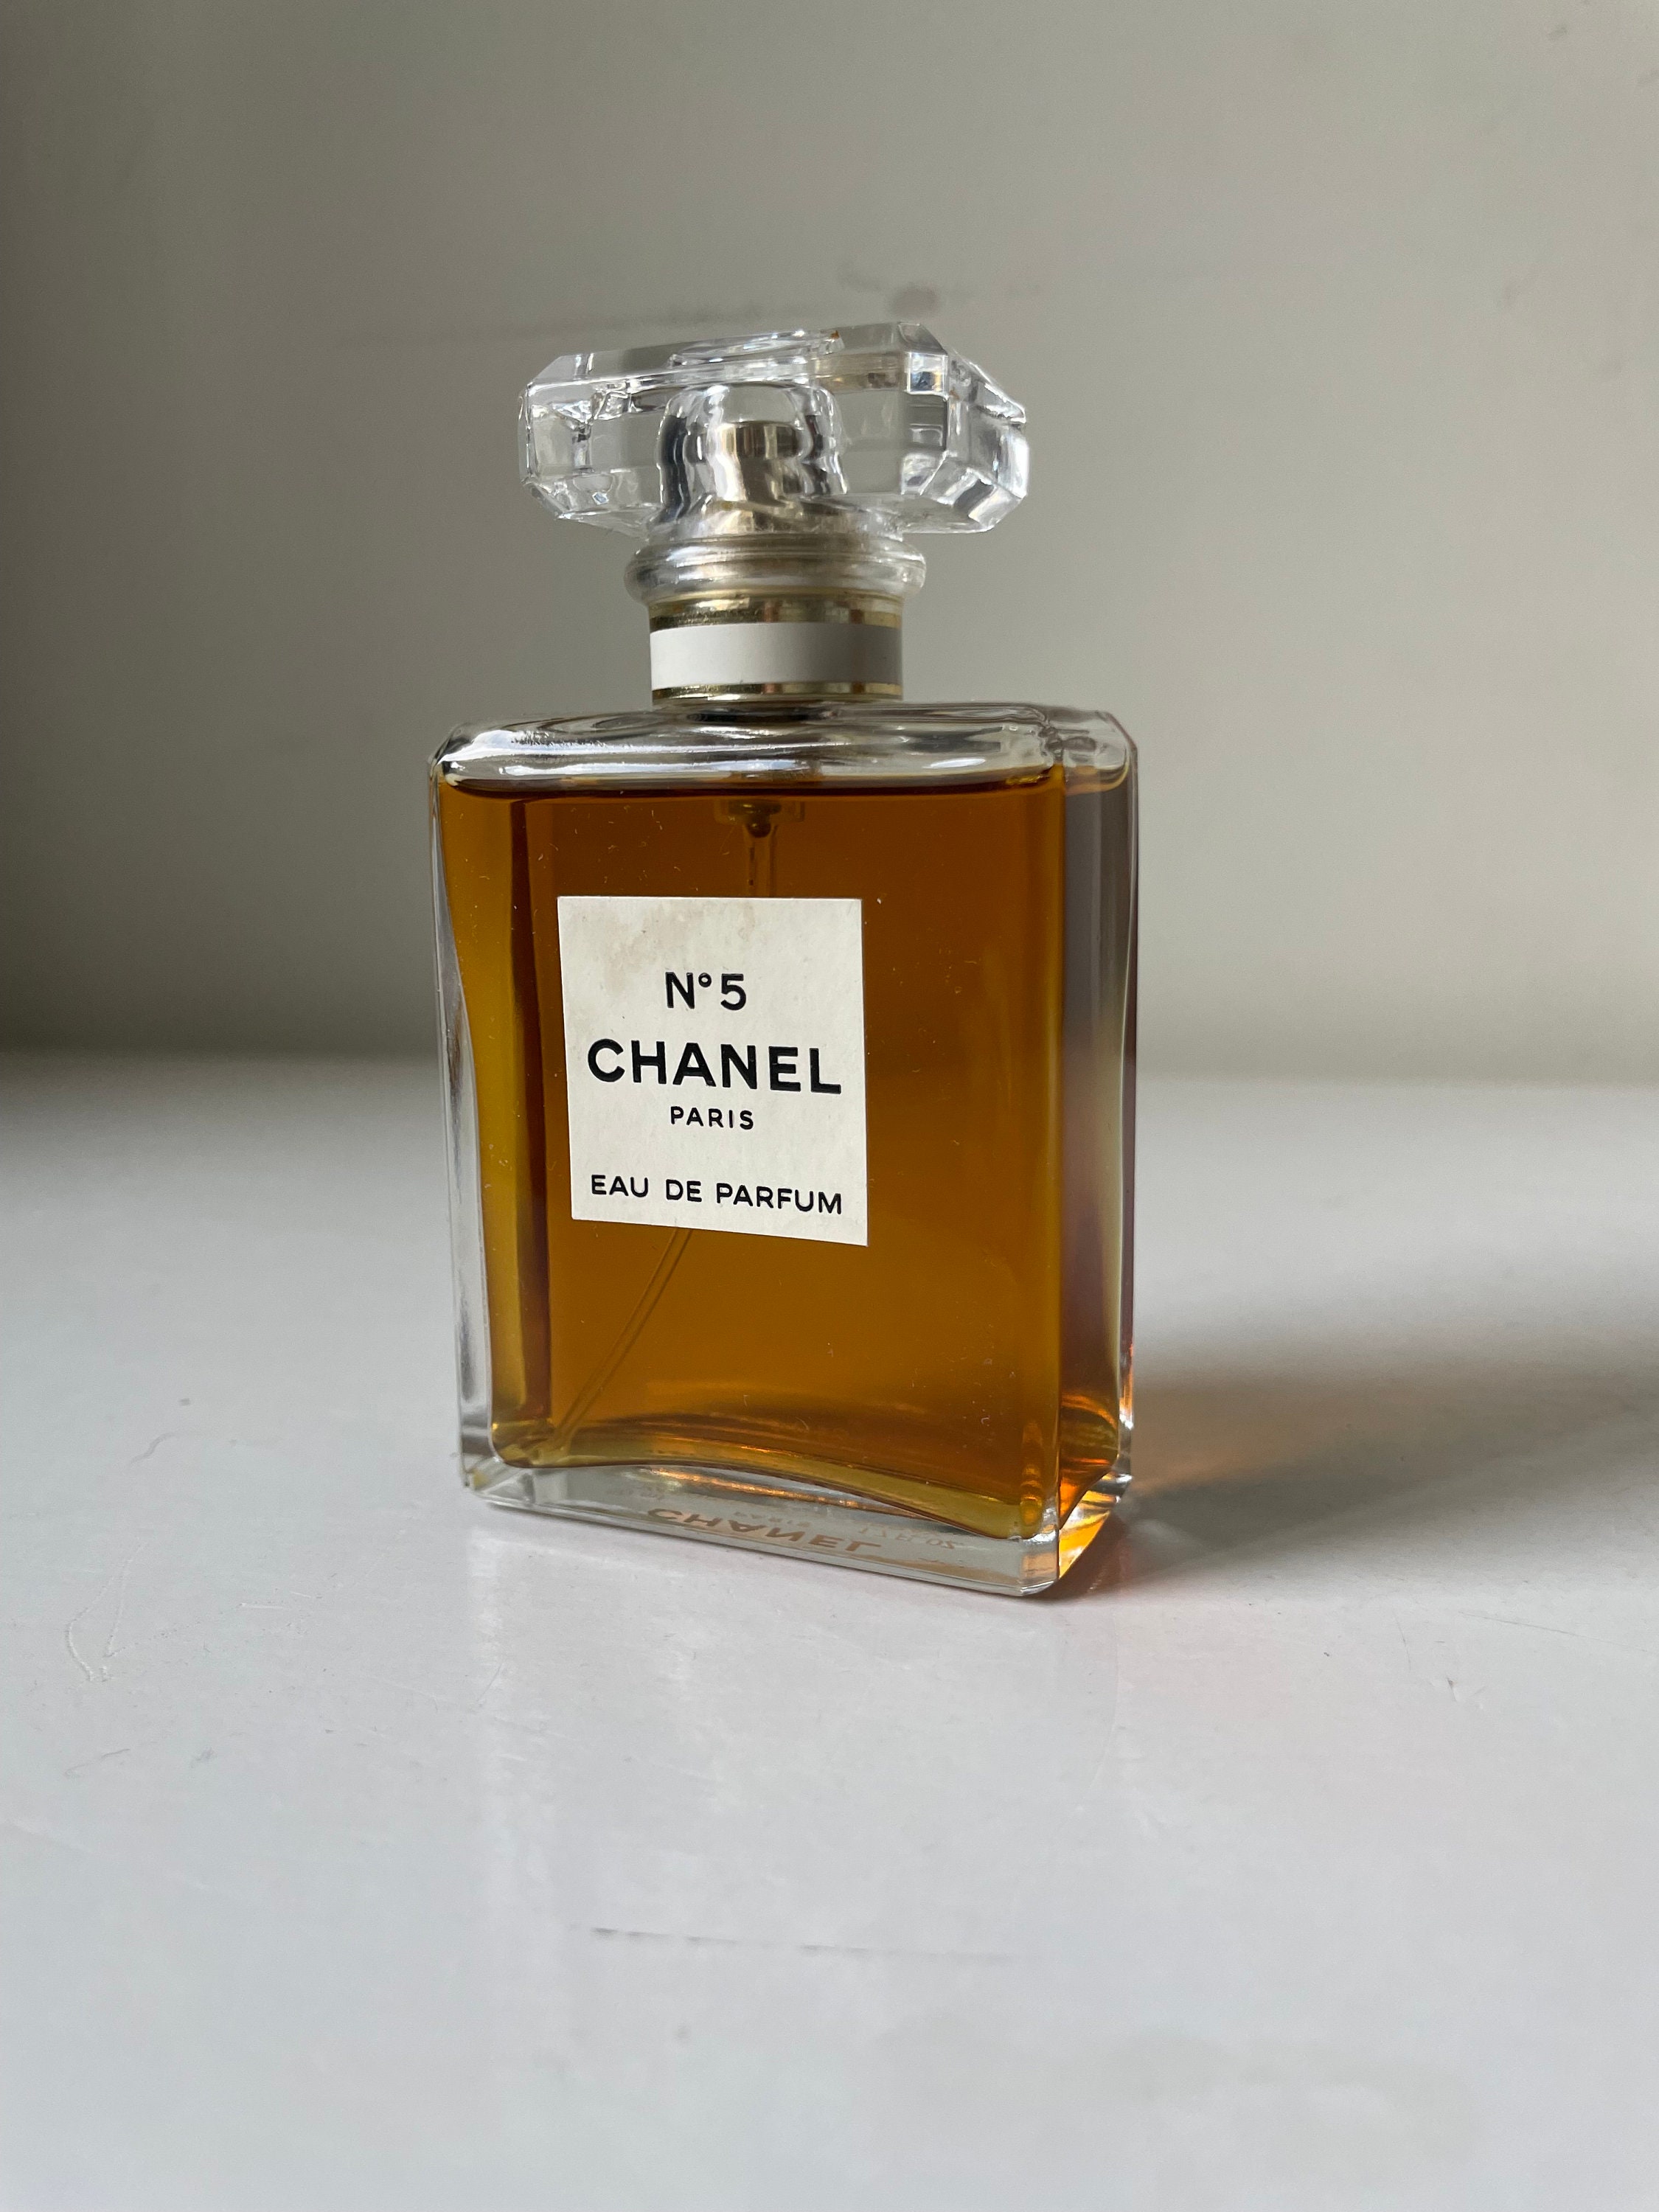 chanel no 5 1.7 oz perfume